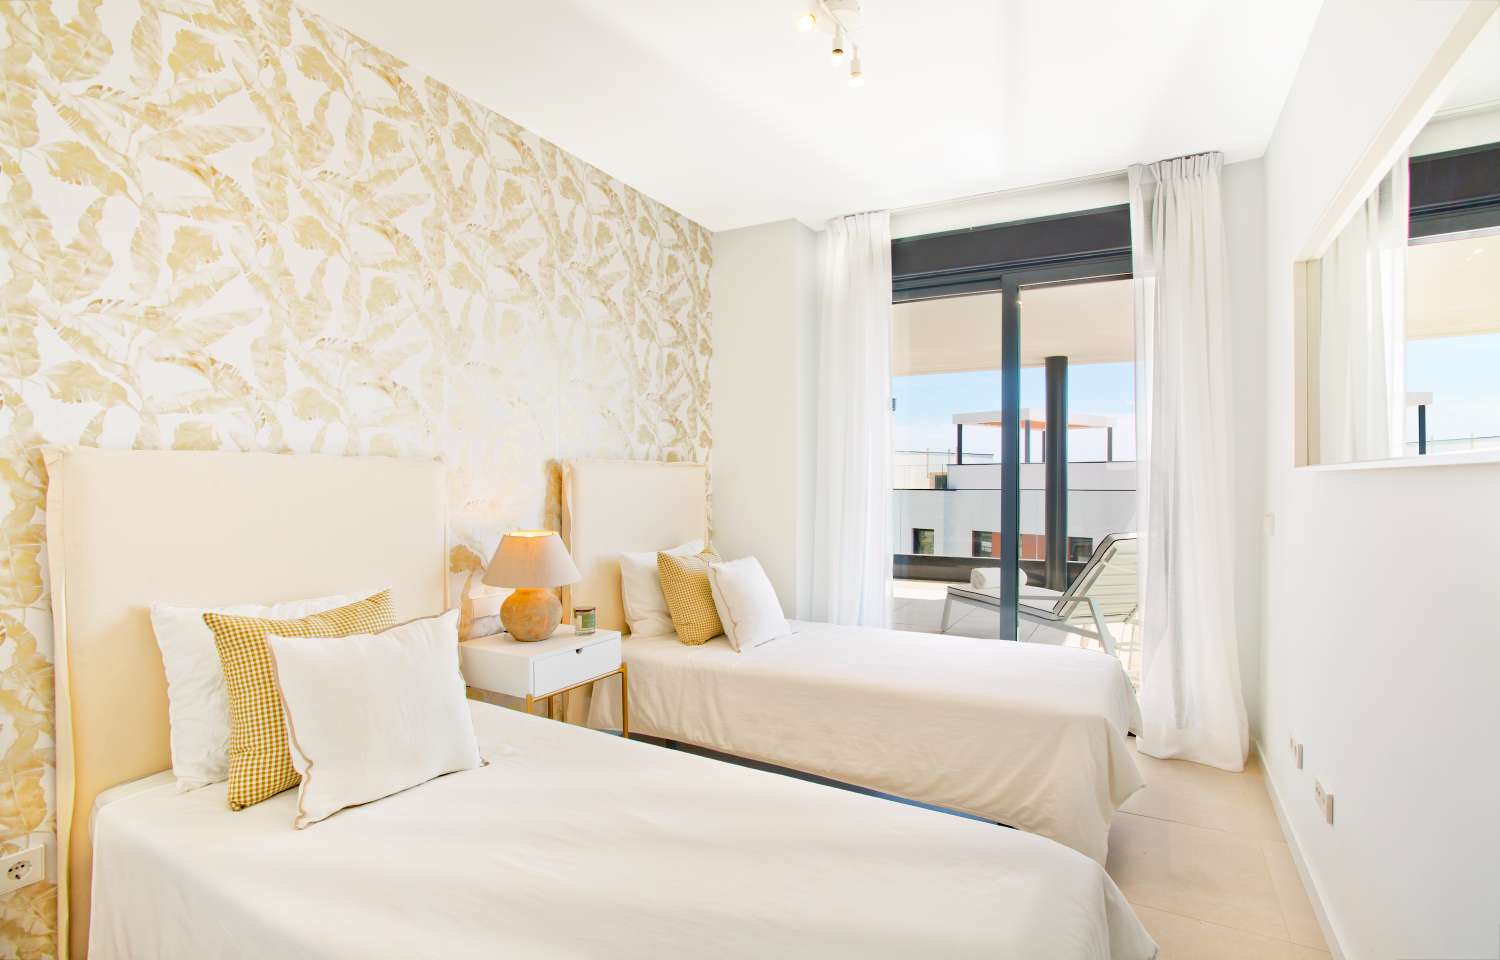 Rymlig lägenhet med 3 sovrum i ett privilegierat läge några minuter från stranden med terrass på 62 m2